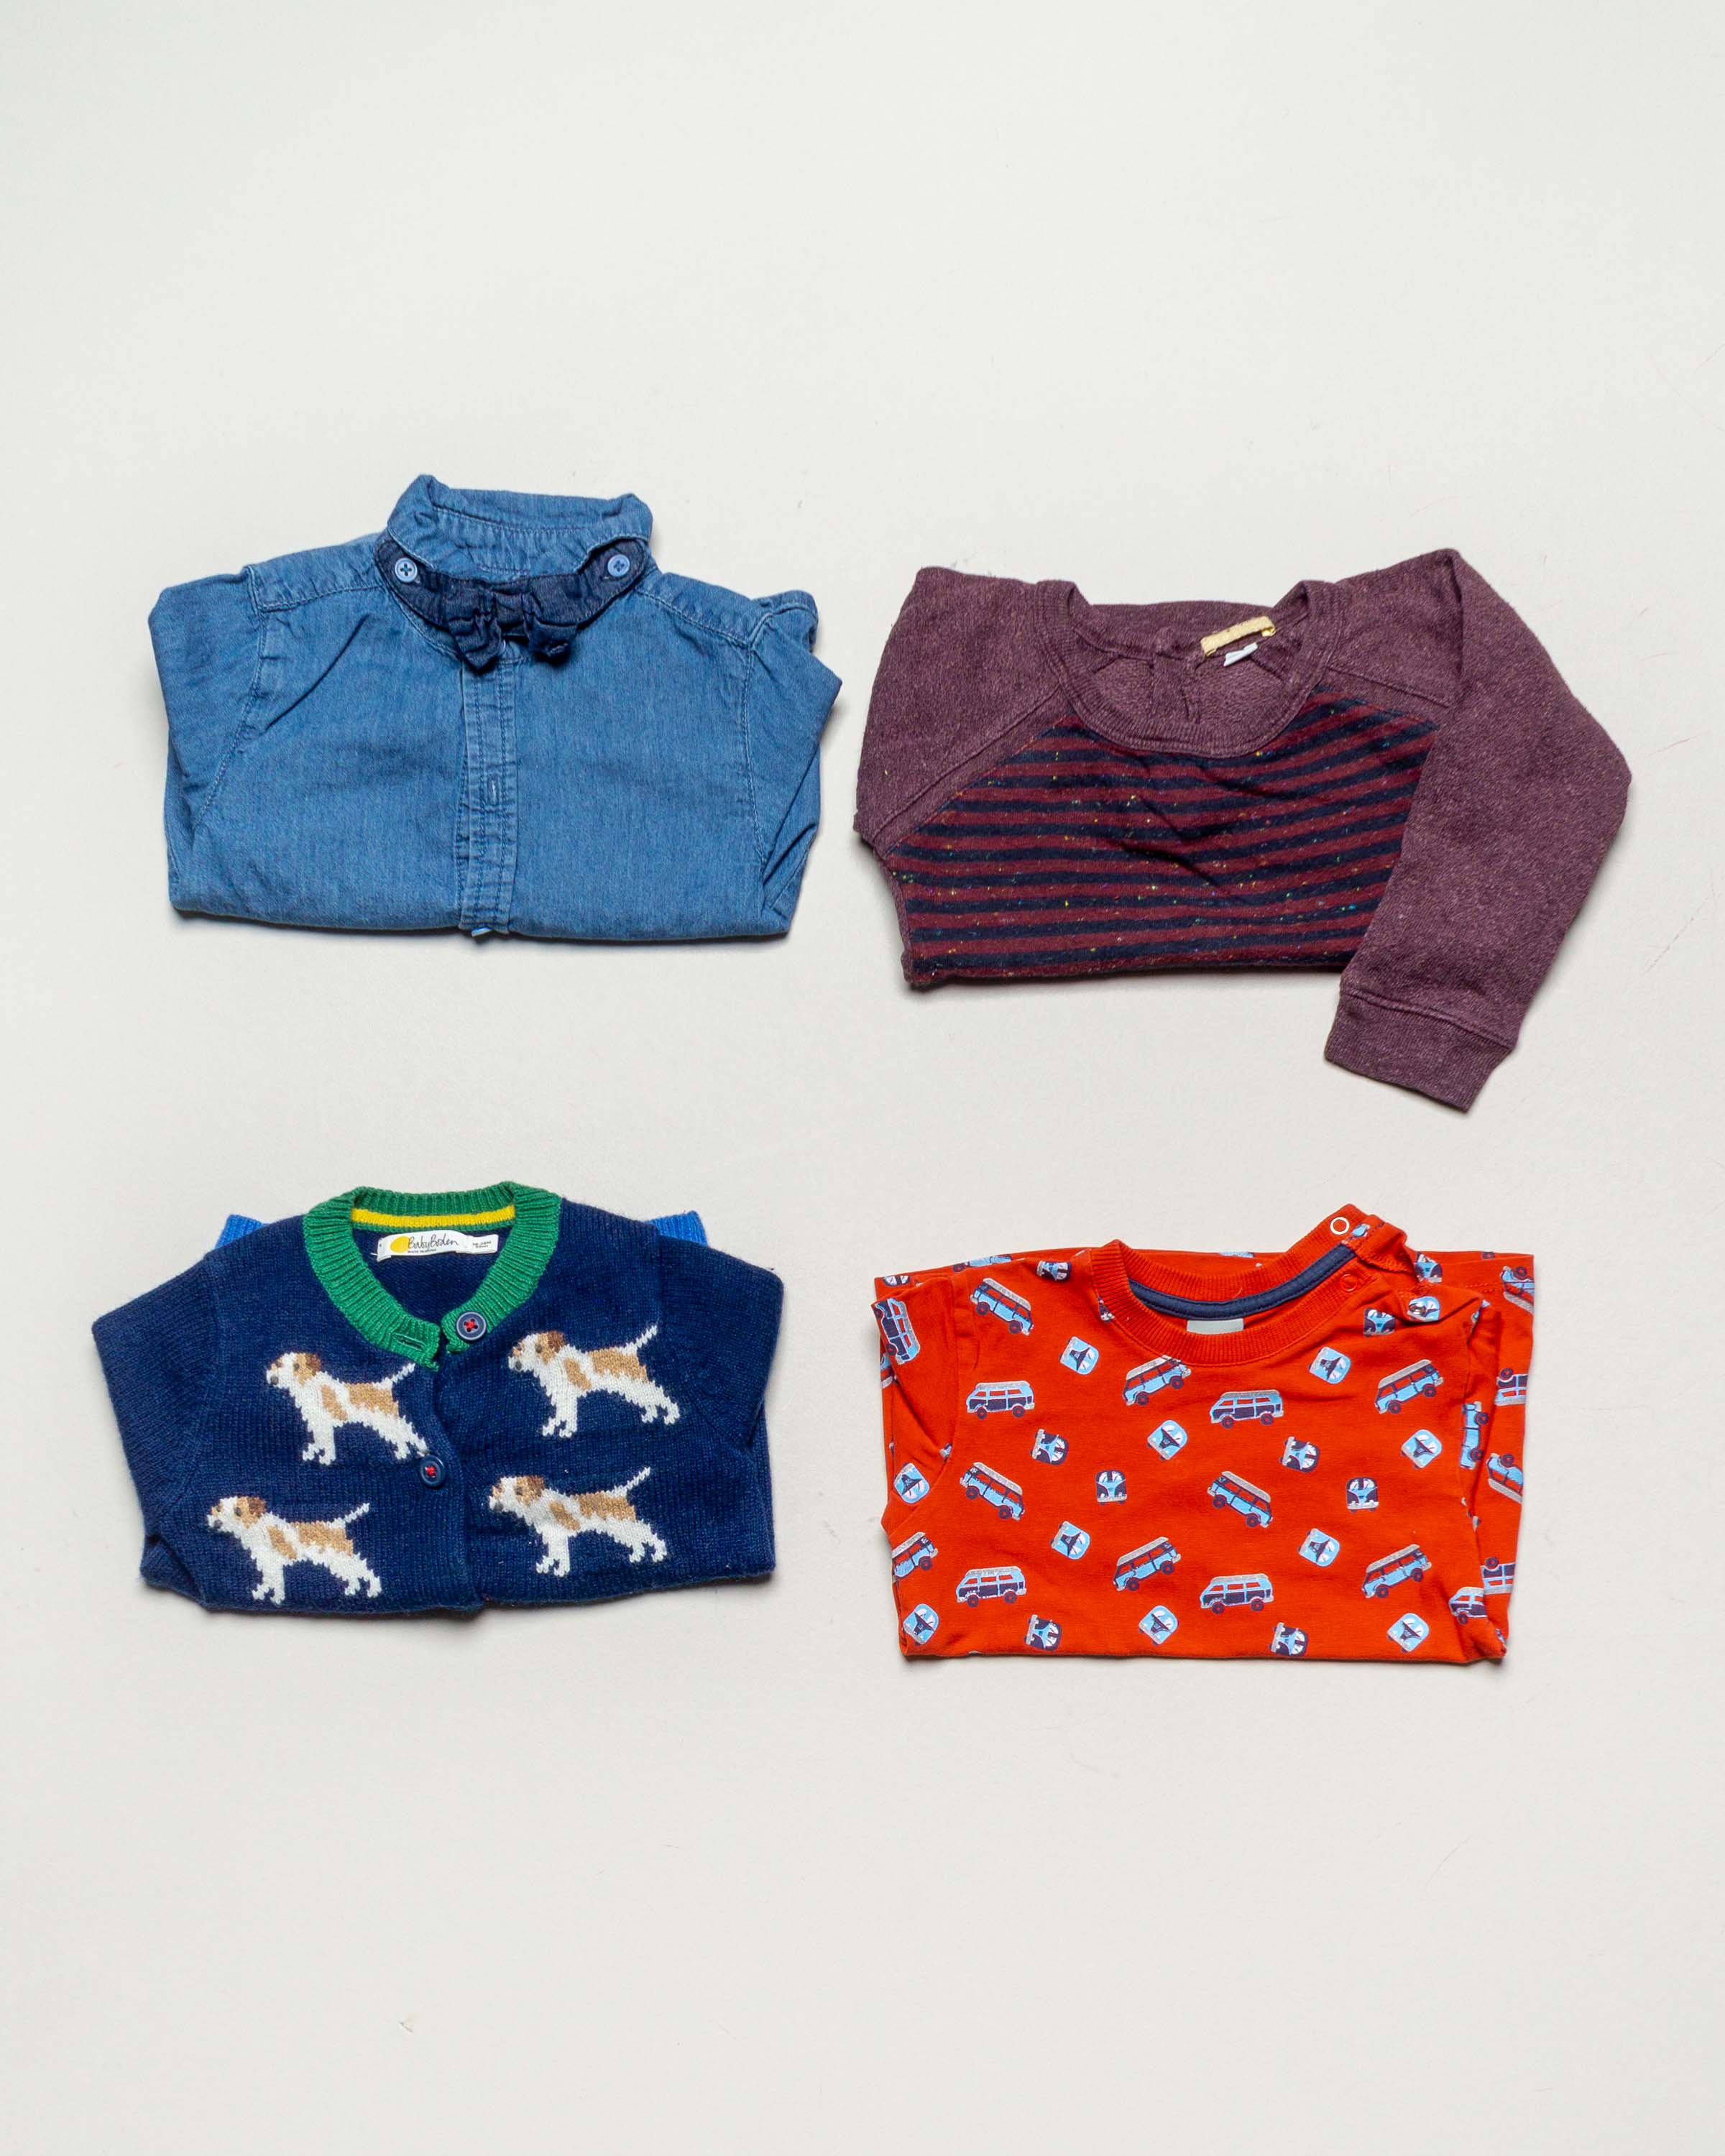 4 Oberteile Gr. 86 – 1x Baby Boden 1x Kanz bunt – kräftige Farben Pullover Hemd schick Muster Mädchen Jungen Set Pack